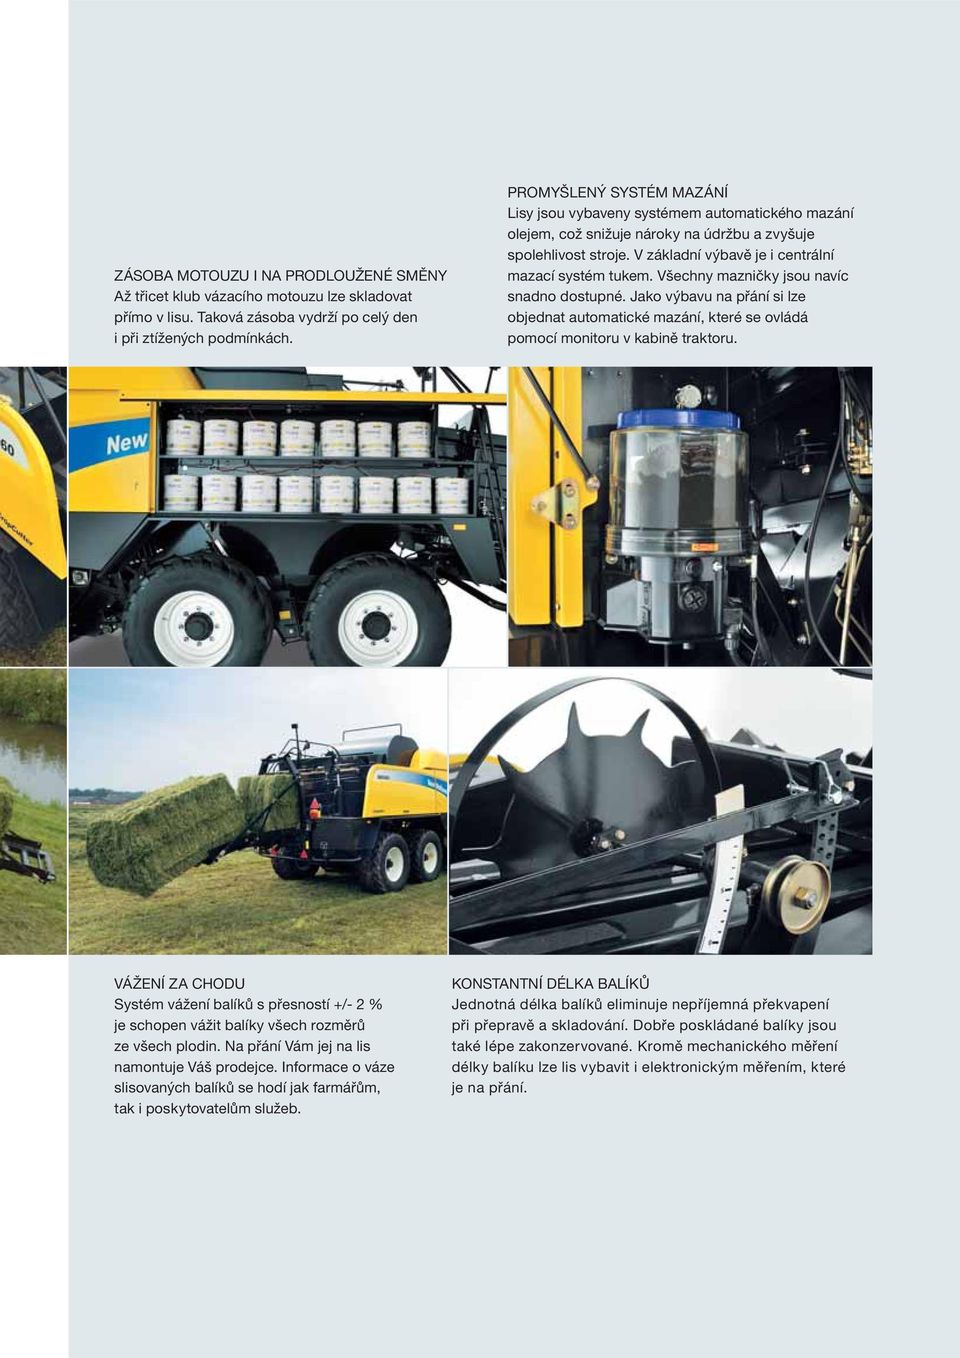 Všechny mazničky jsou navíc snadno dostupné. Jako výbavu na přání si lze objednat automatické mazání, které se ovládá pomocí monitoru v kabině traktoru.